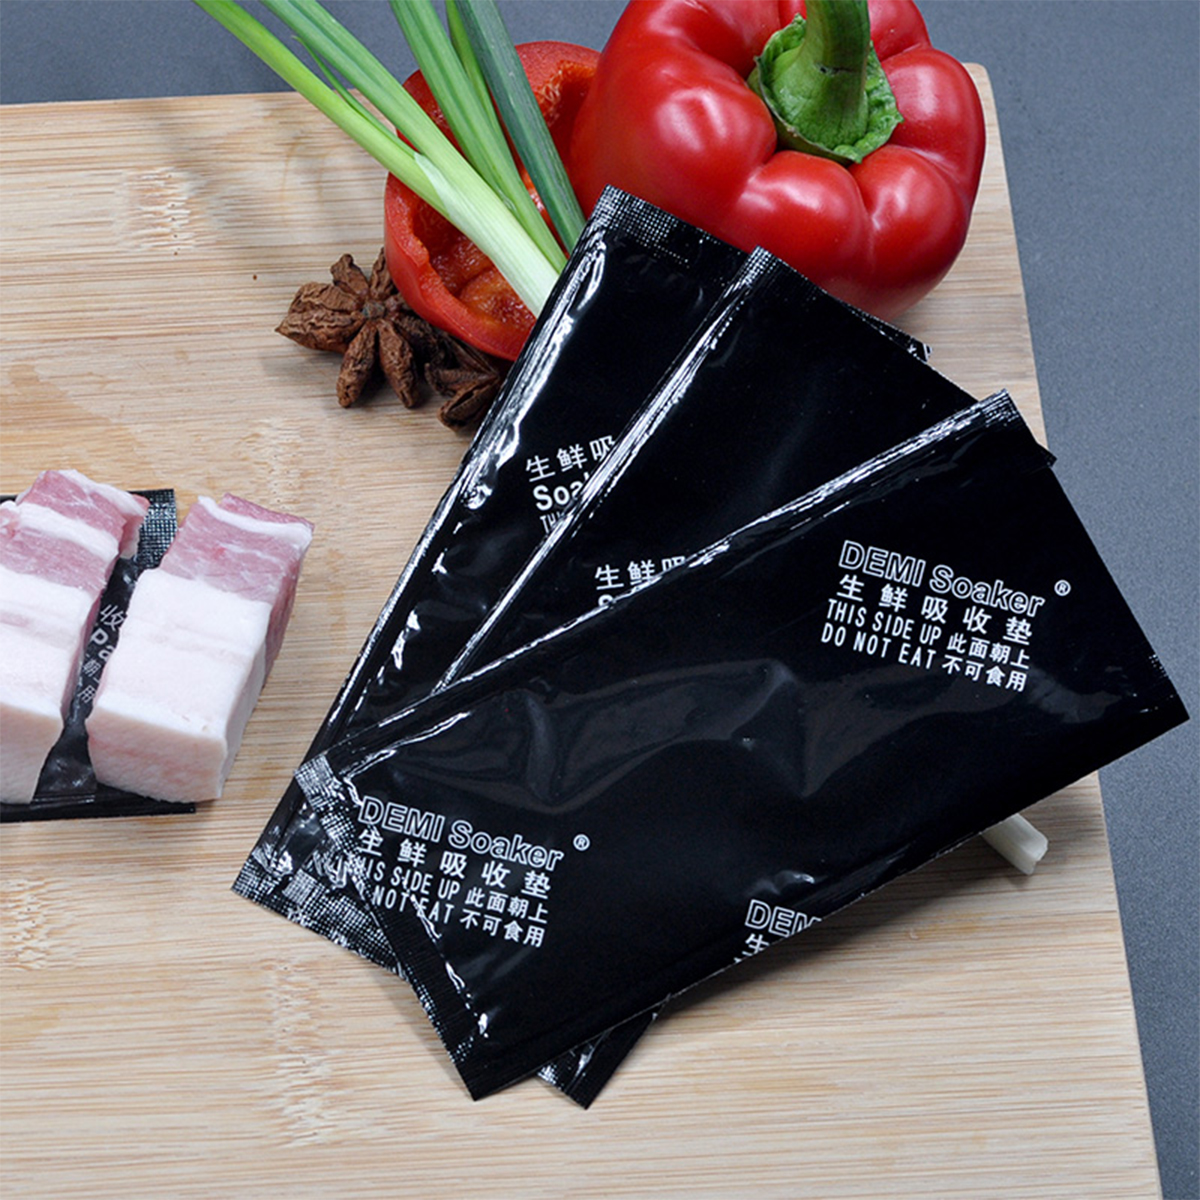 Tampon absorbant pour viande de qualité alimentaire, prix bon marché